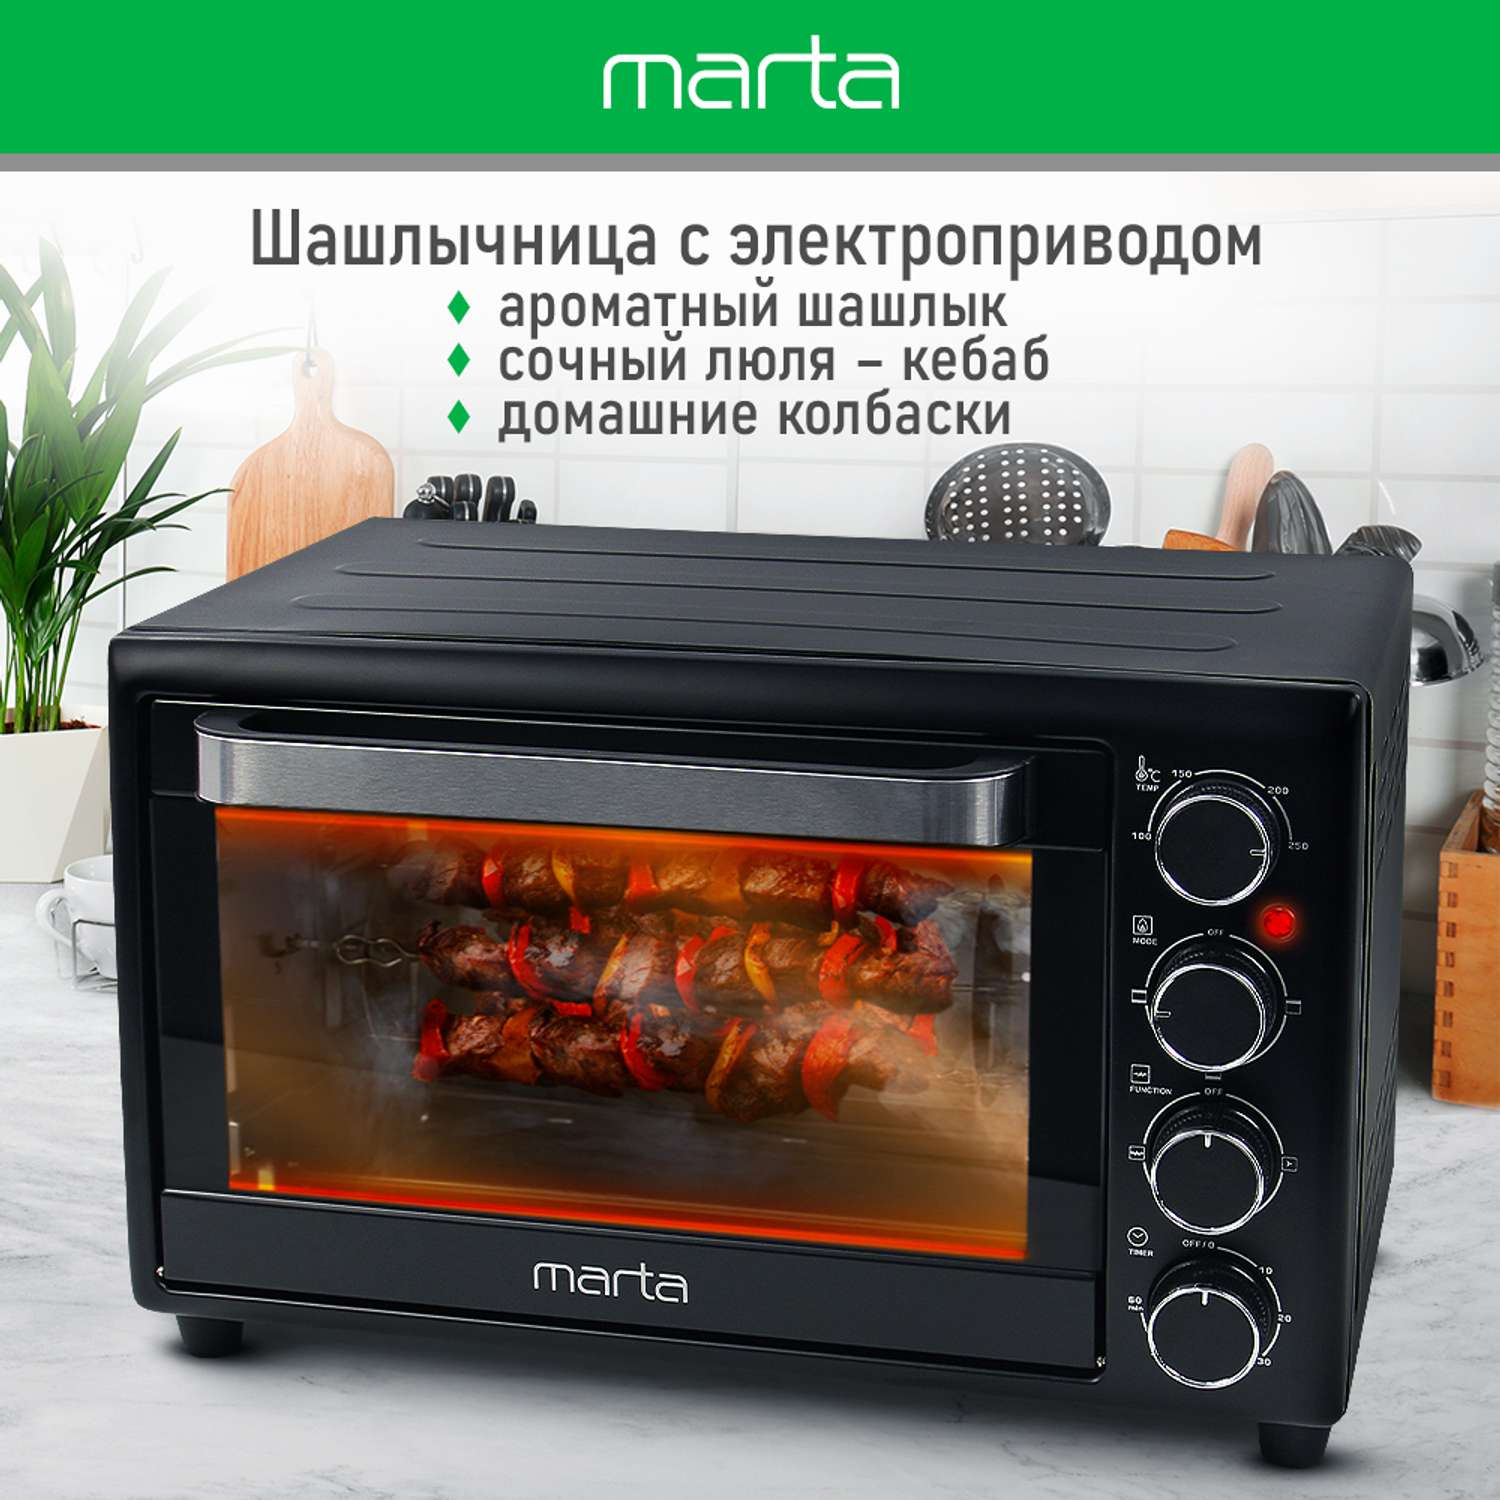 Мини-печь MARTA MT-EO4299A духовой шкаф/черный жемчуг - фото 4